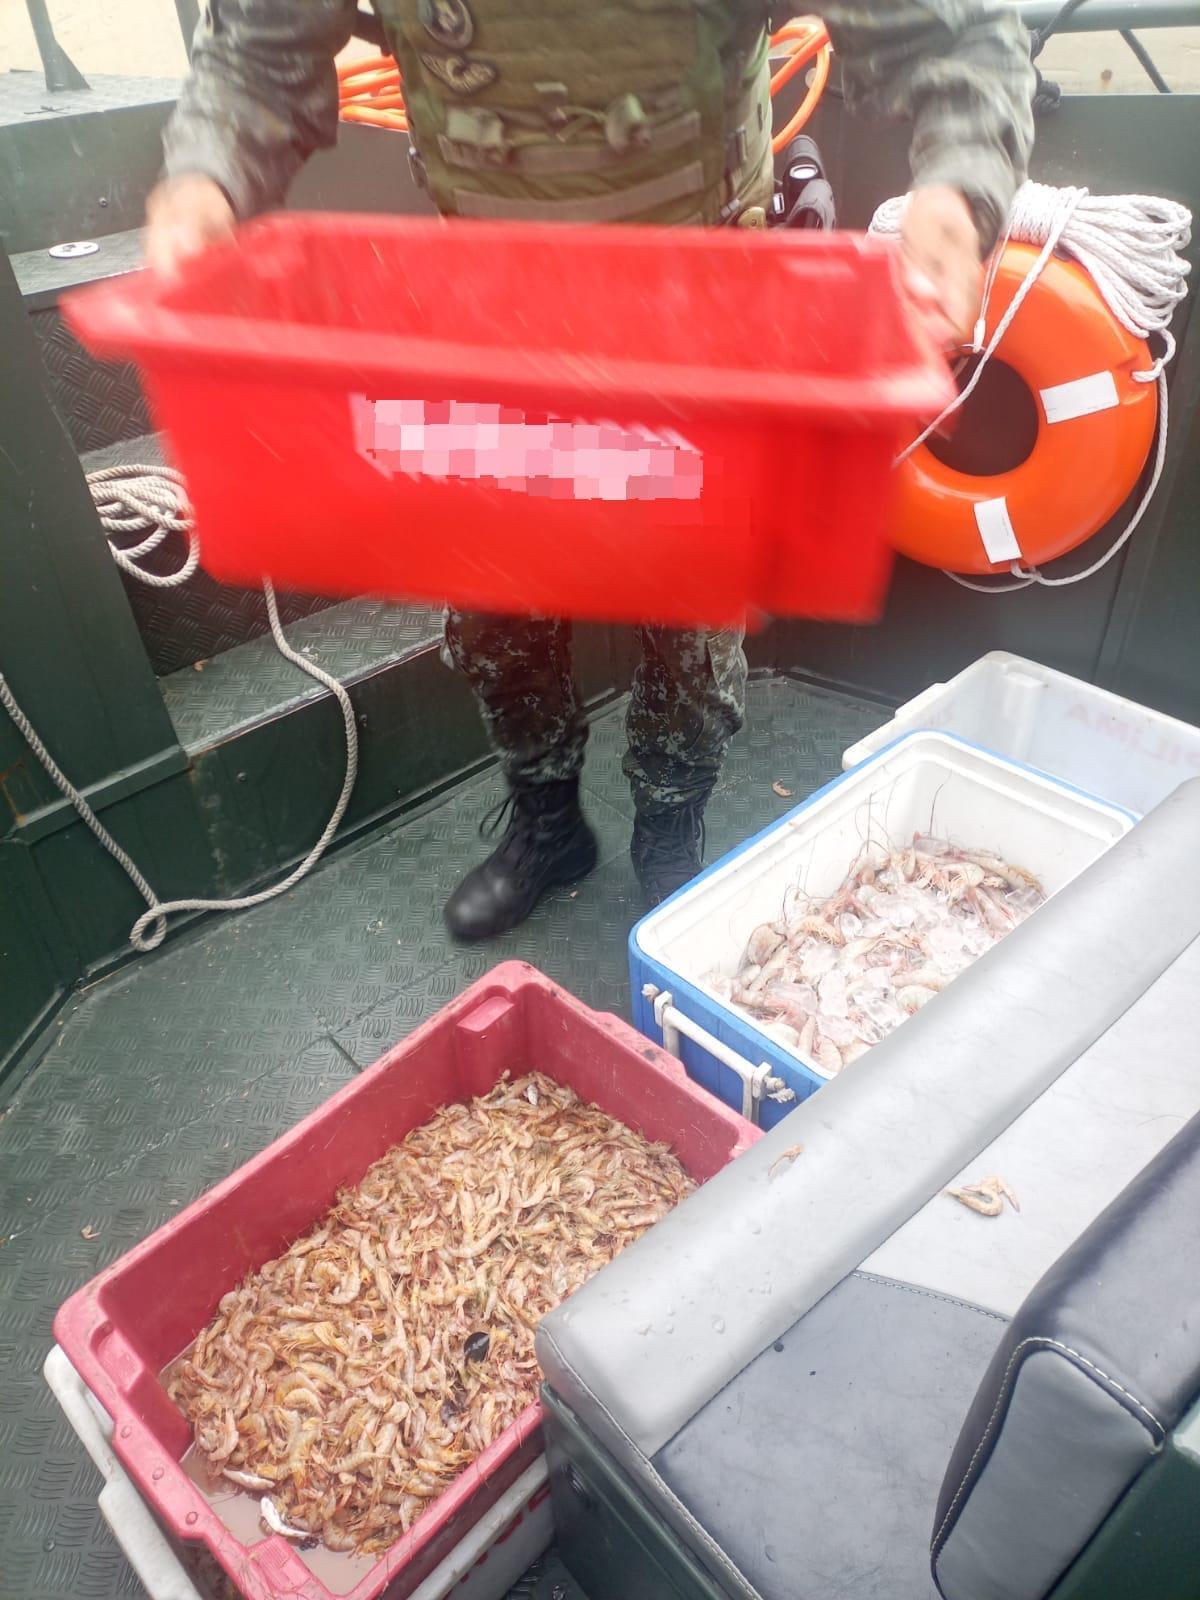 Pesca ilegal: PM ambiental apreende 100 kg de camarão